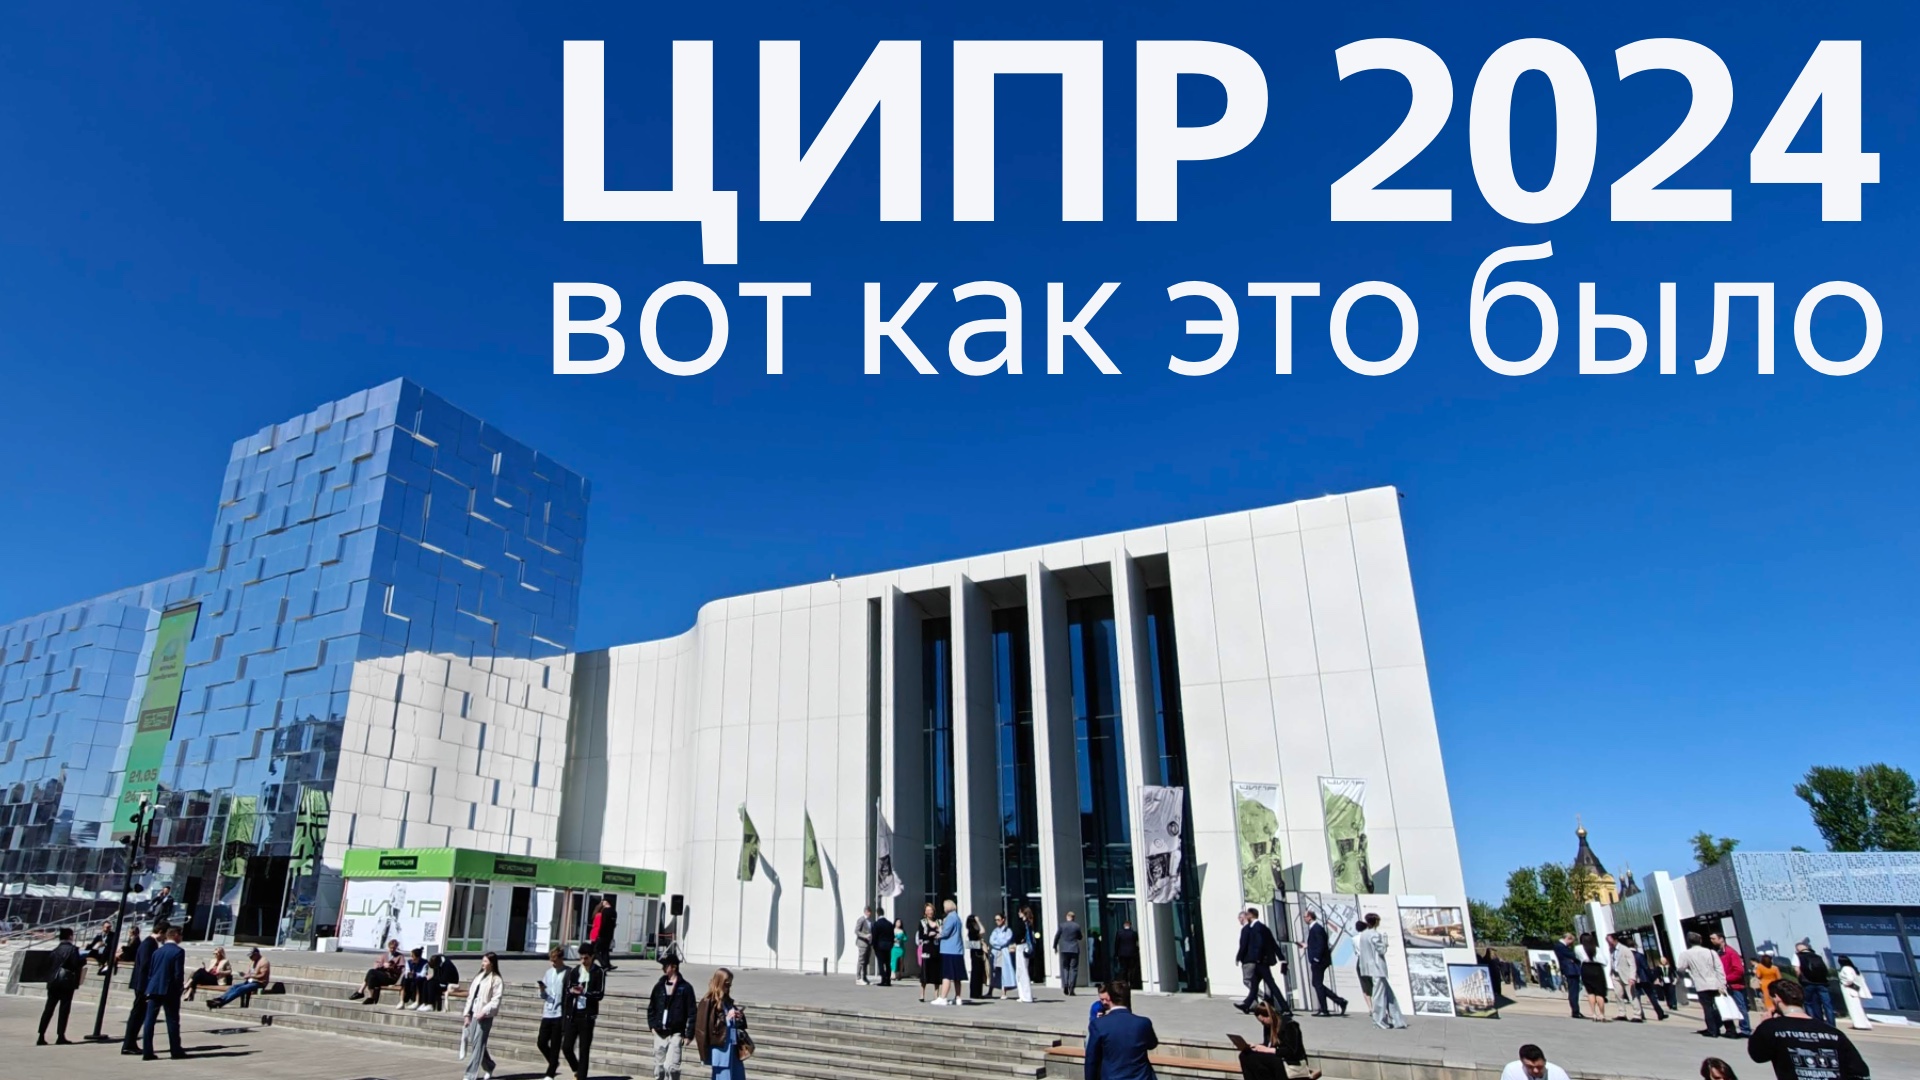 ЦИПР 2024: Репортаж из Нижнего Новгорода с главной практической IT-конференции